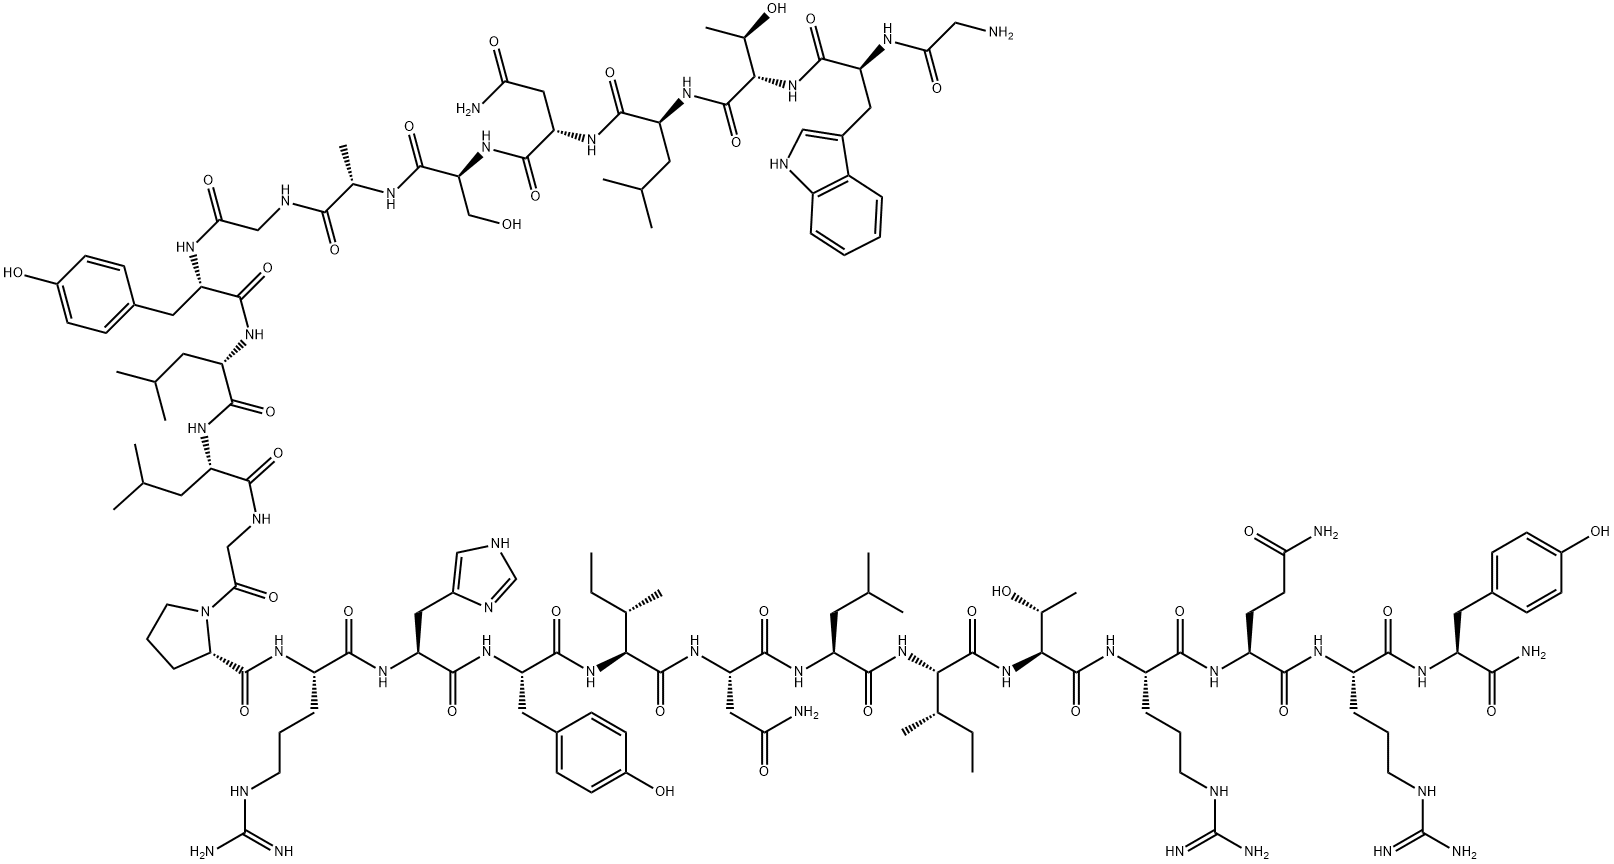 H-GLY-TRP-THR-LEU-ASN-SER-ALA-GLY-TYR-LEU-LEU-GLY-PRO-ARG-HIS-TYR-ILE-ASN-LEU-ILE-THR-ARG-GLN-ARG-TYR-NH2|Galanin (1-13)-Neuropeptide Y (25-36) amide